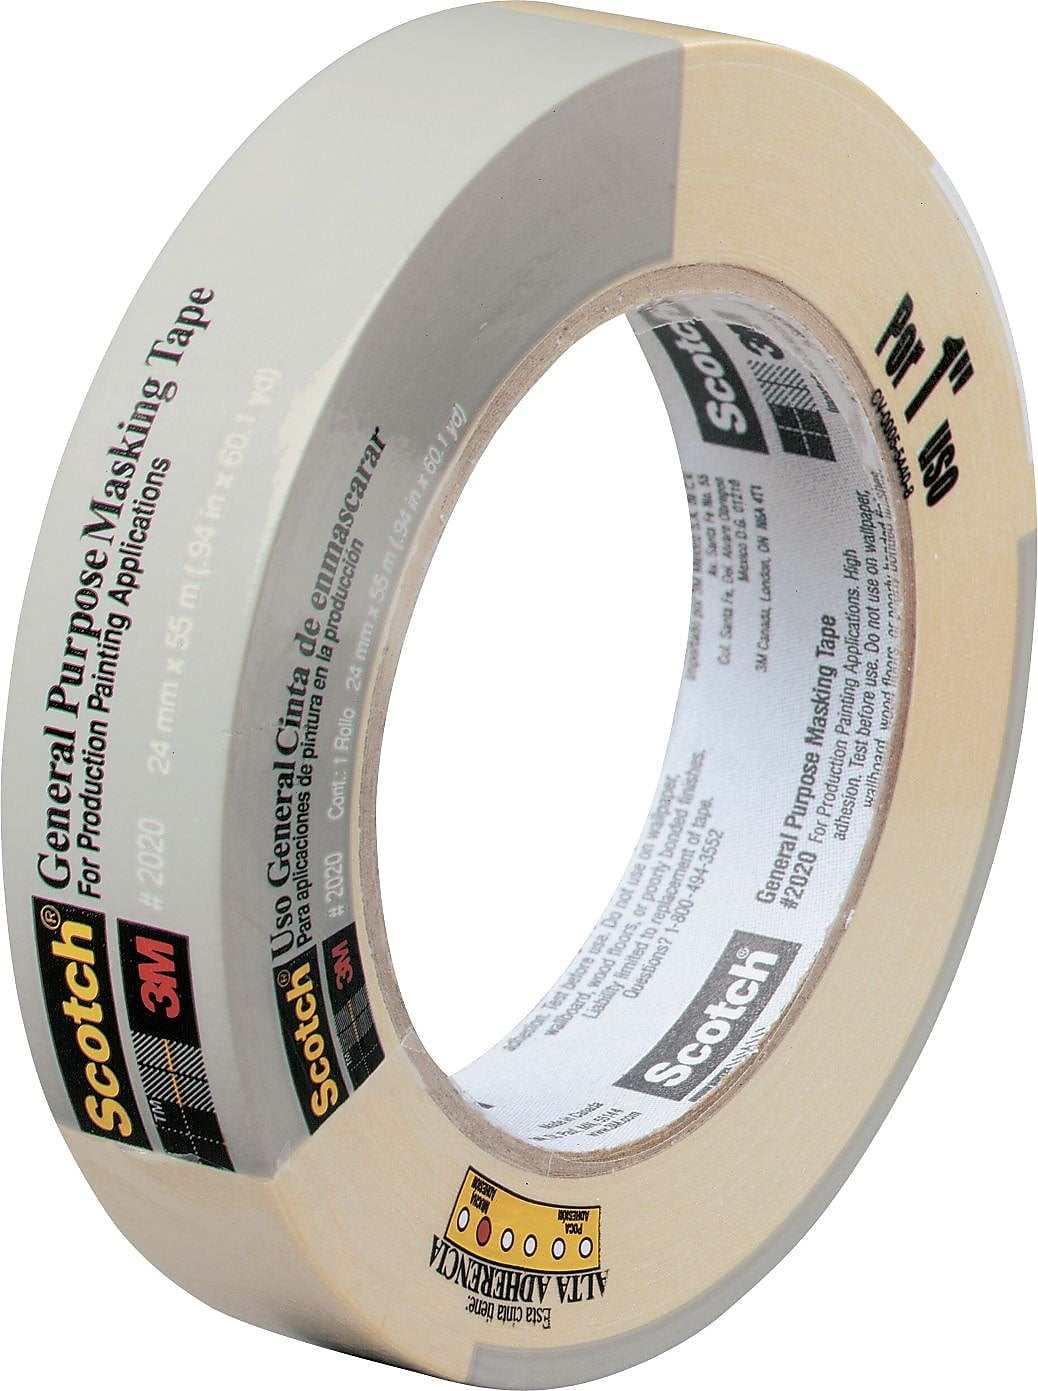 Scotch® High Temperature Masking Tape 214, Tan, 16 mm x 55 m